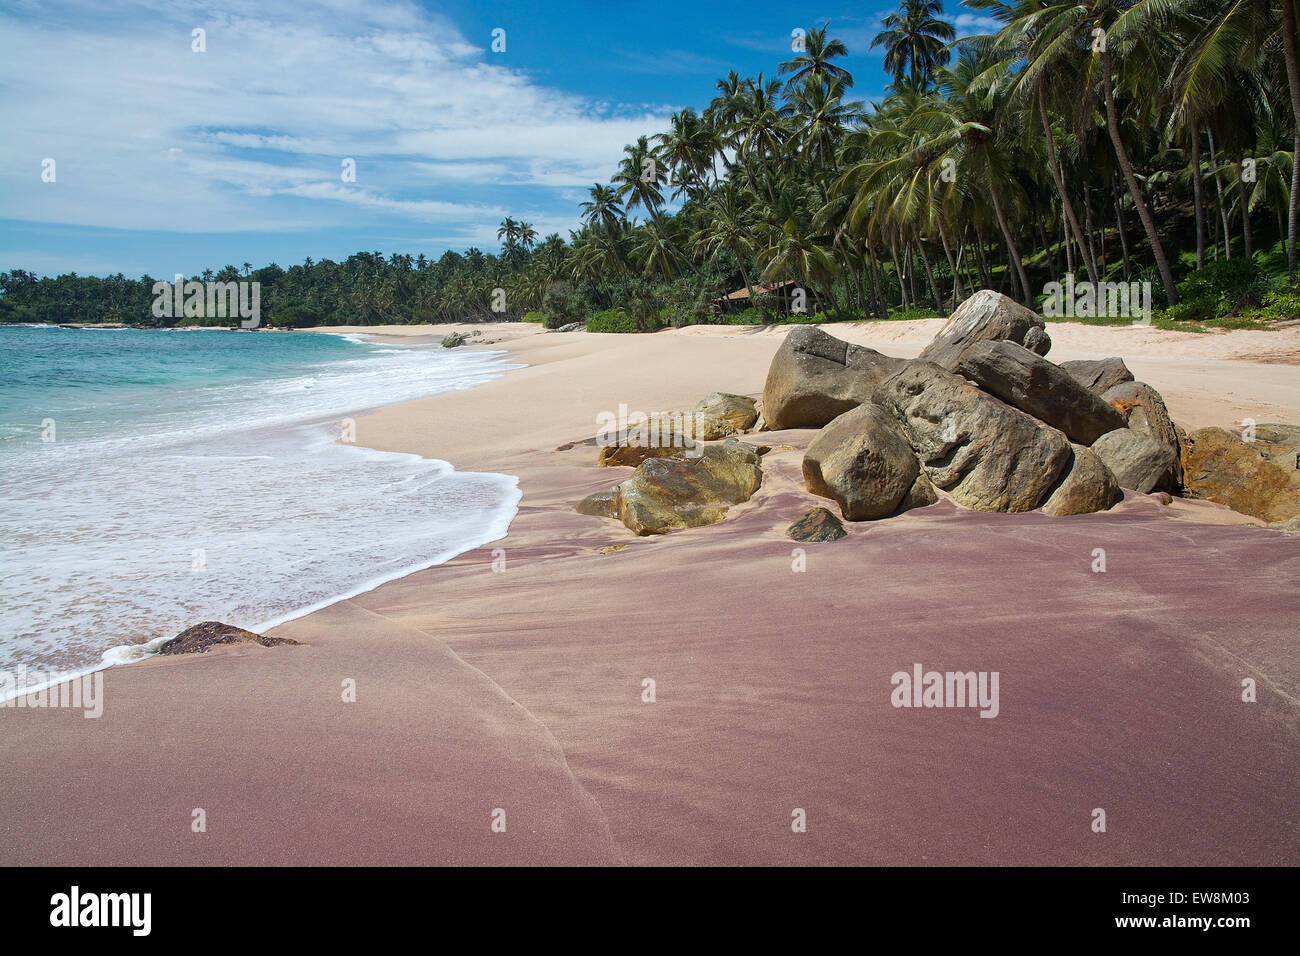 Paradies-Strand mit grünen türkisfarbenen Wellen, Kokosnuss-Palmen und feinen unberührten Sand, südlichen Provinz, Sri Lanka, Asien. Stockfoto